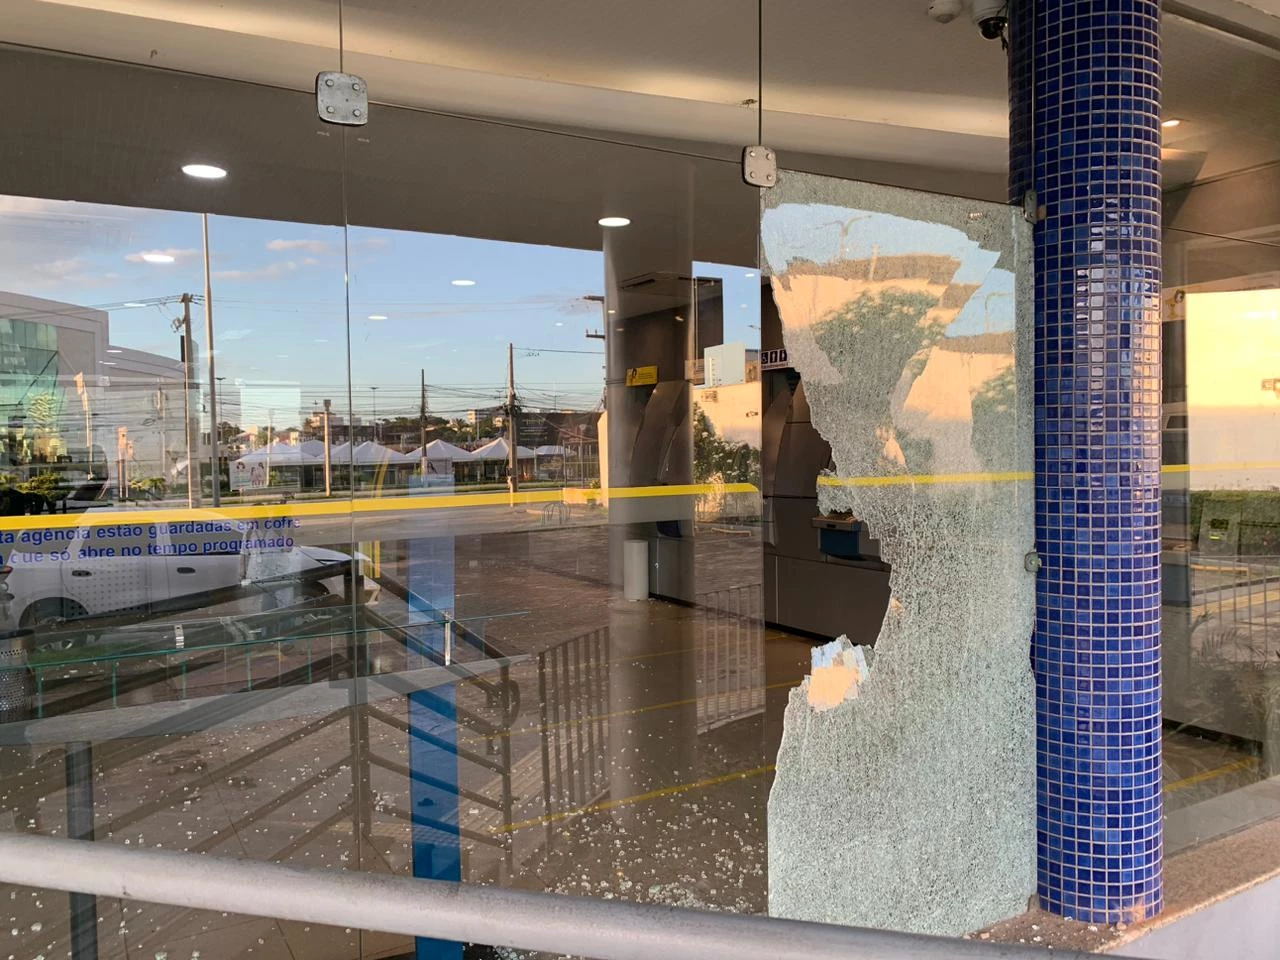 Após quebrar vidraça de banco, homem é contido com tiro n...